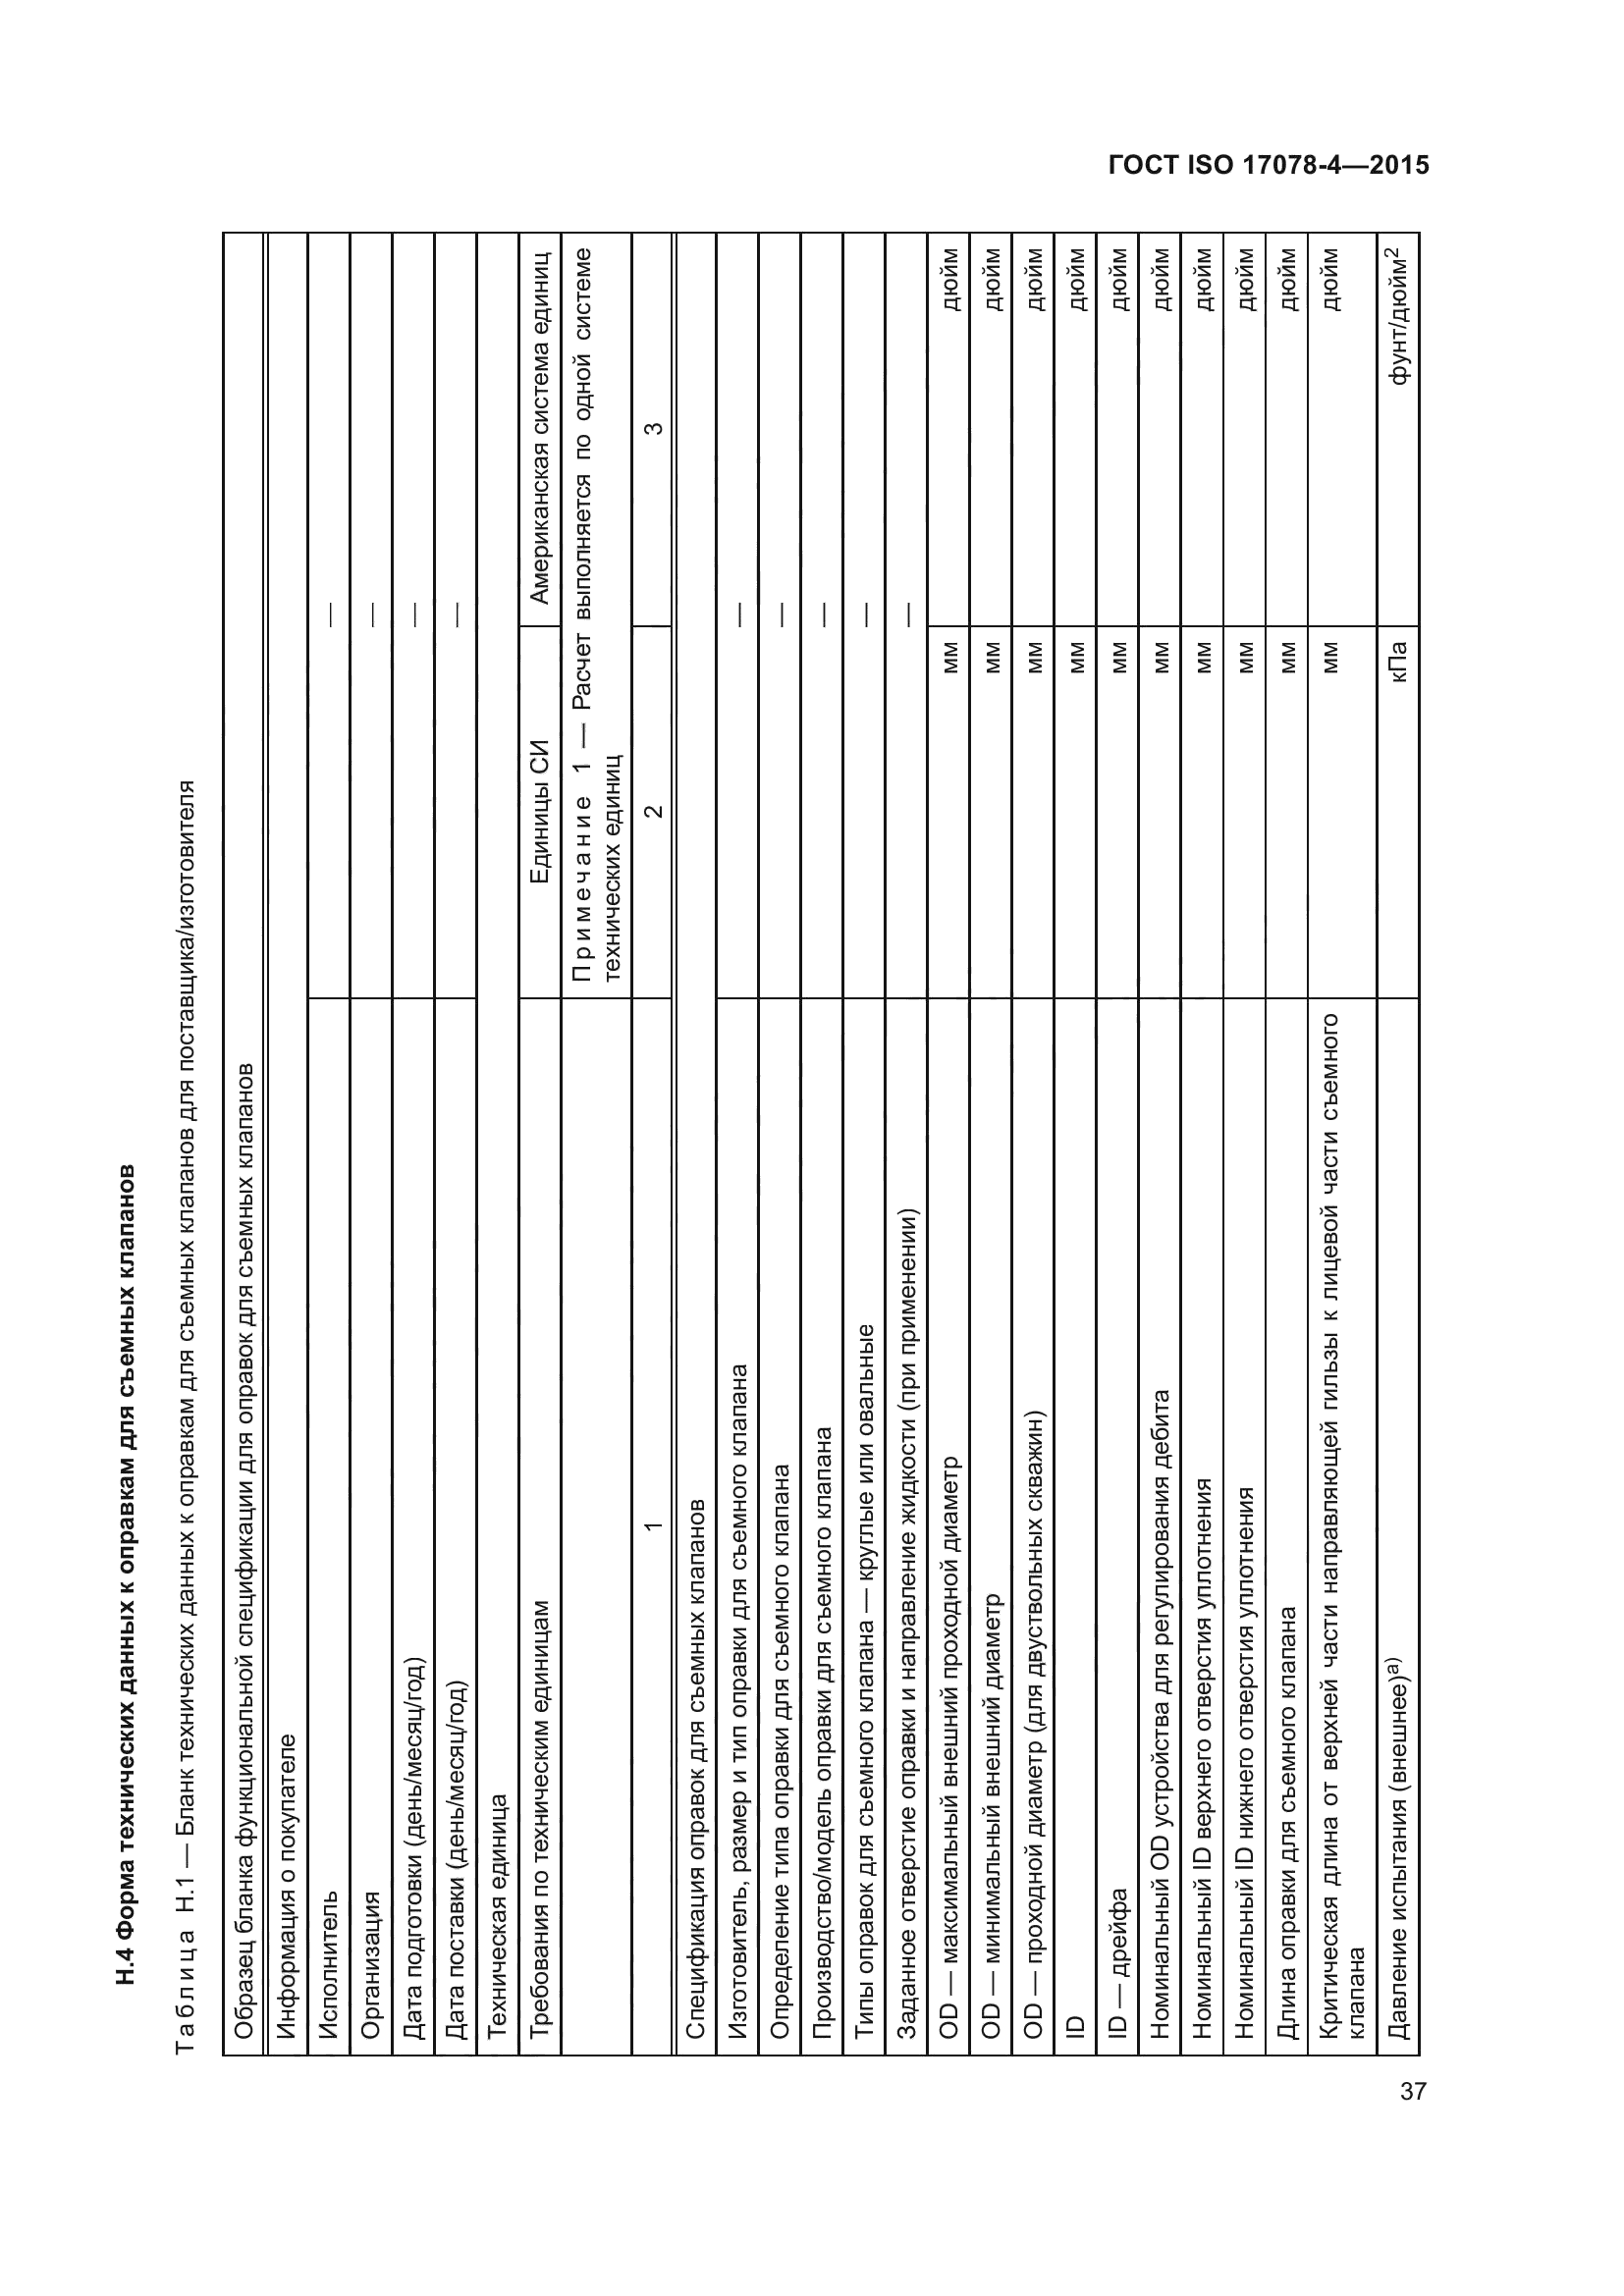 ГОСТ ISO 17078-4-2015